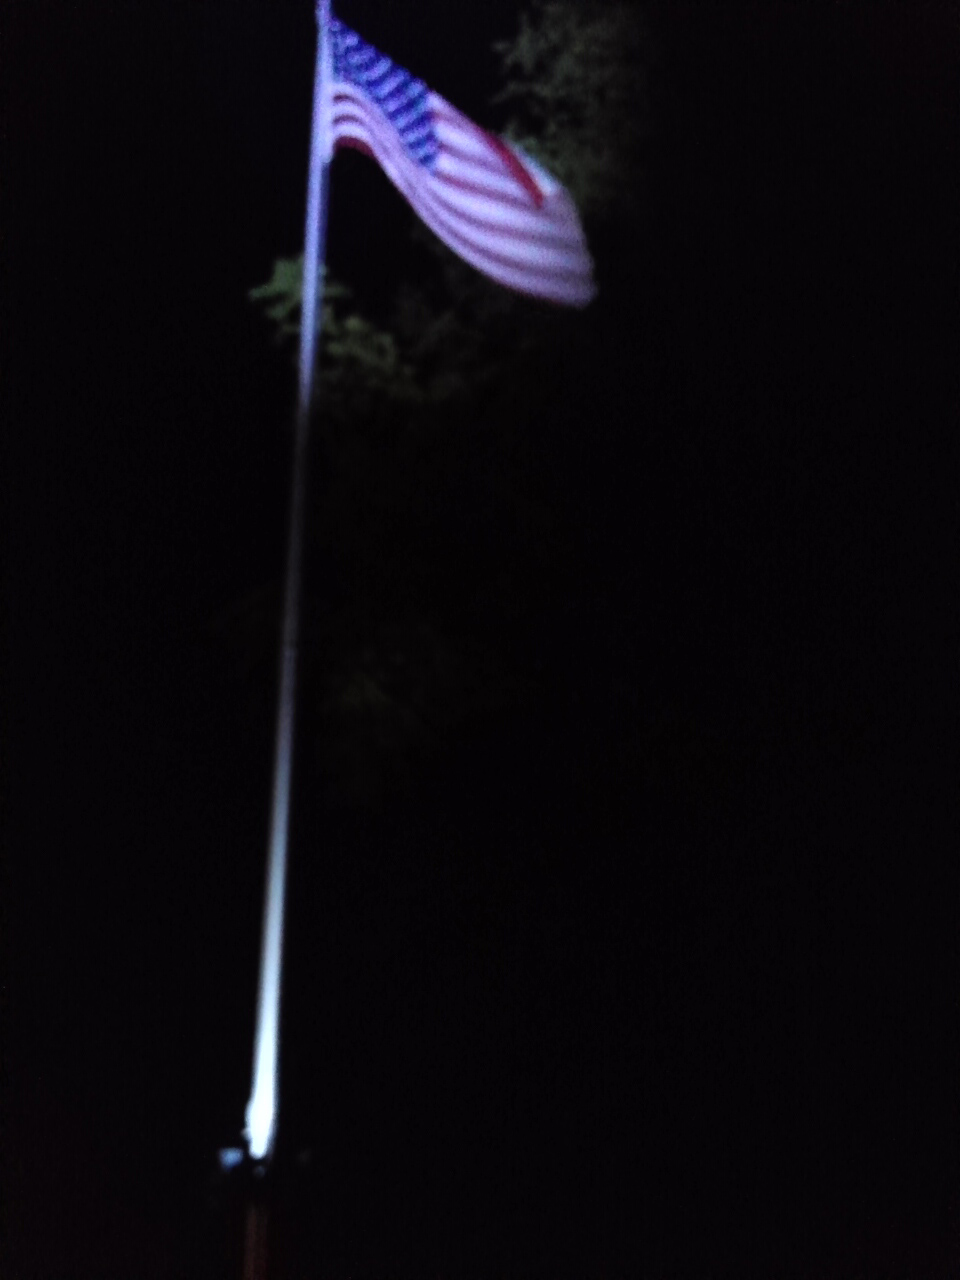 PolePal Extreme lighting up Flagpole